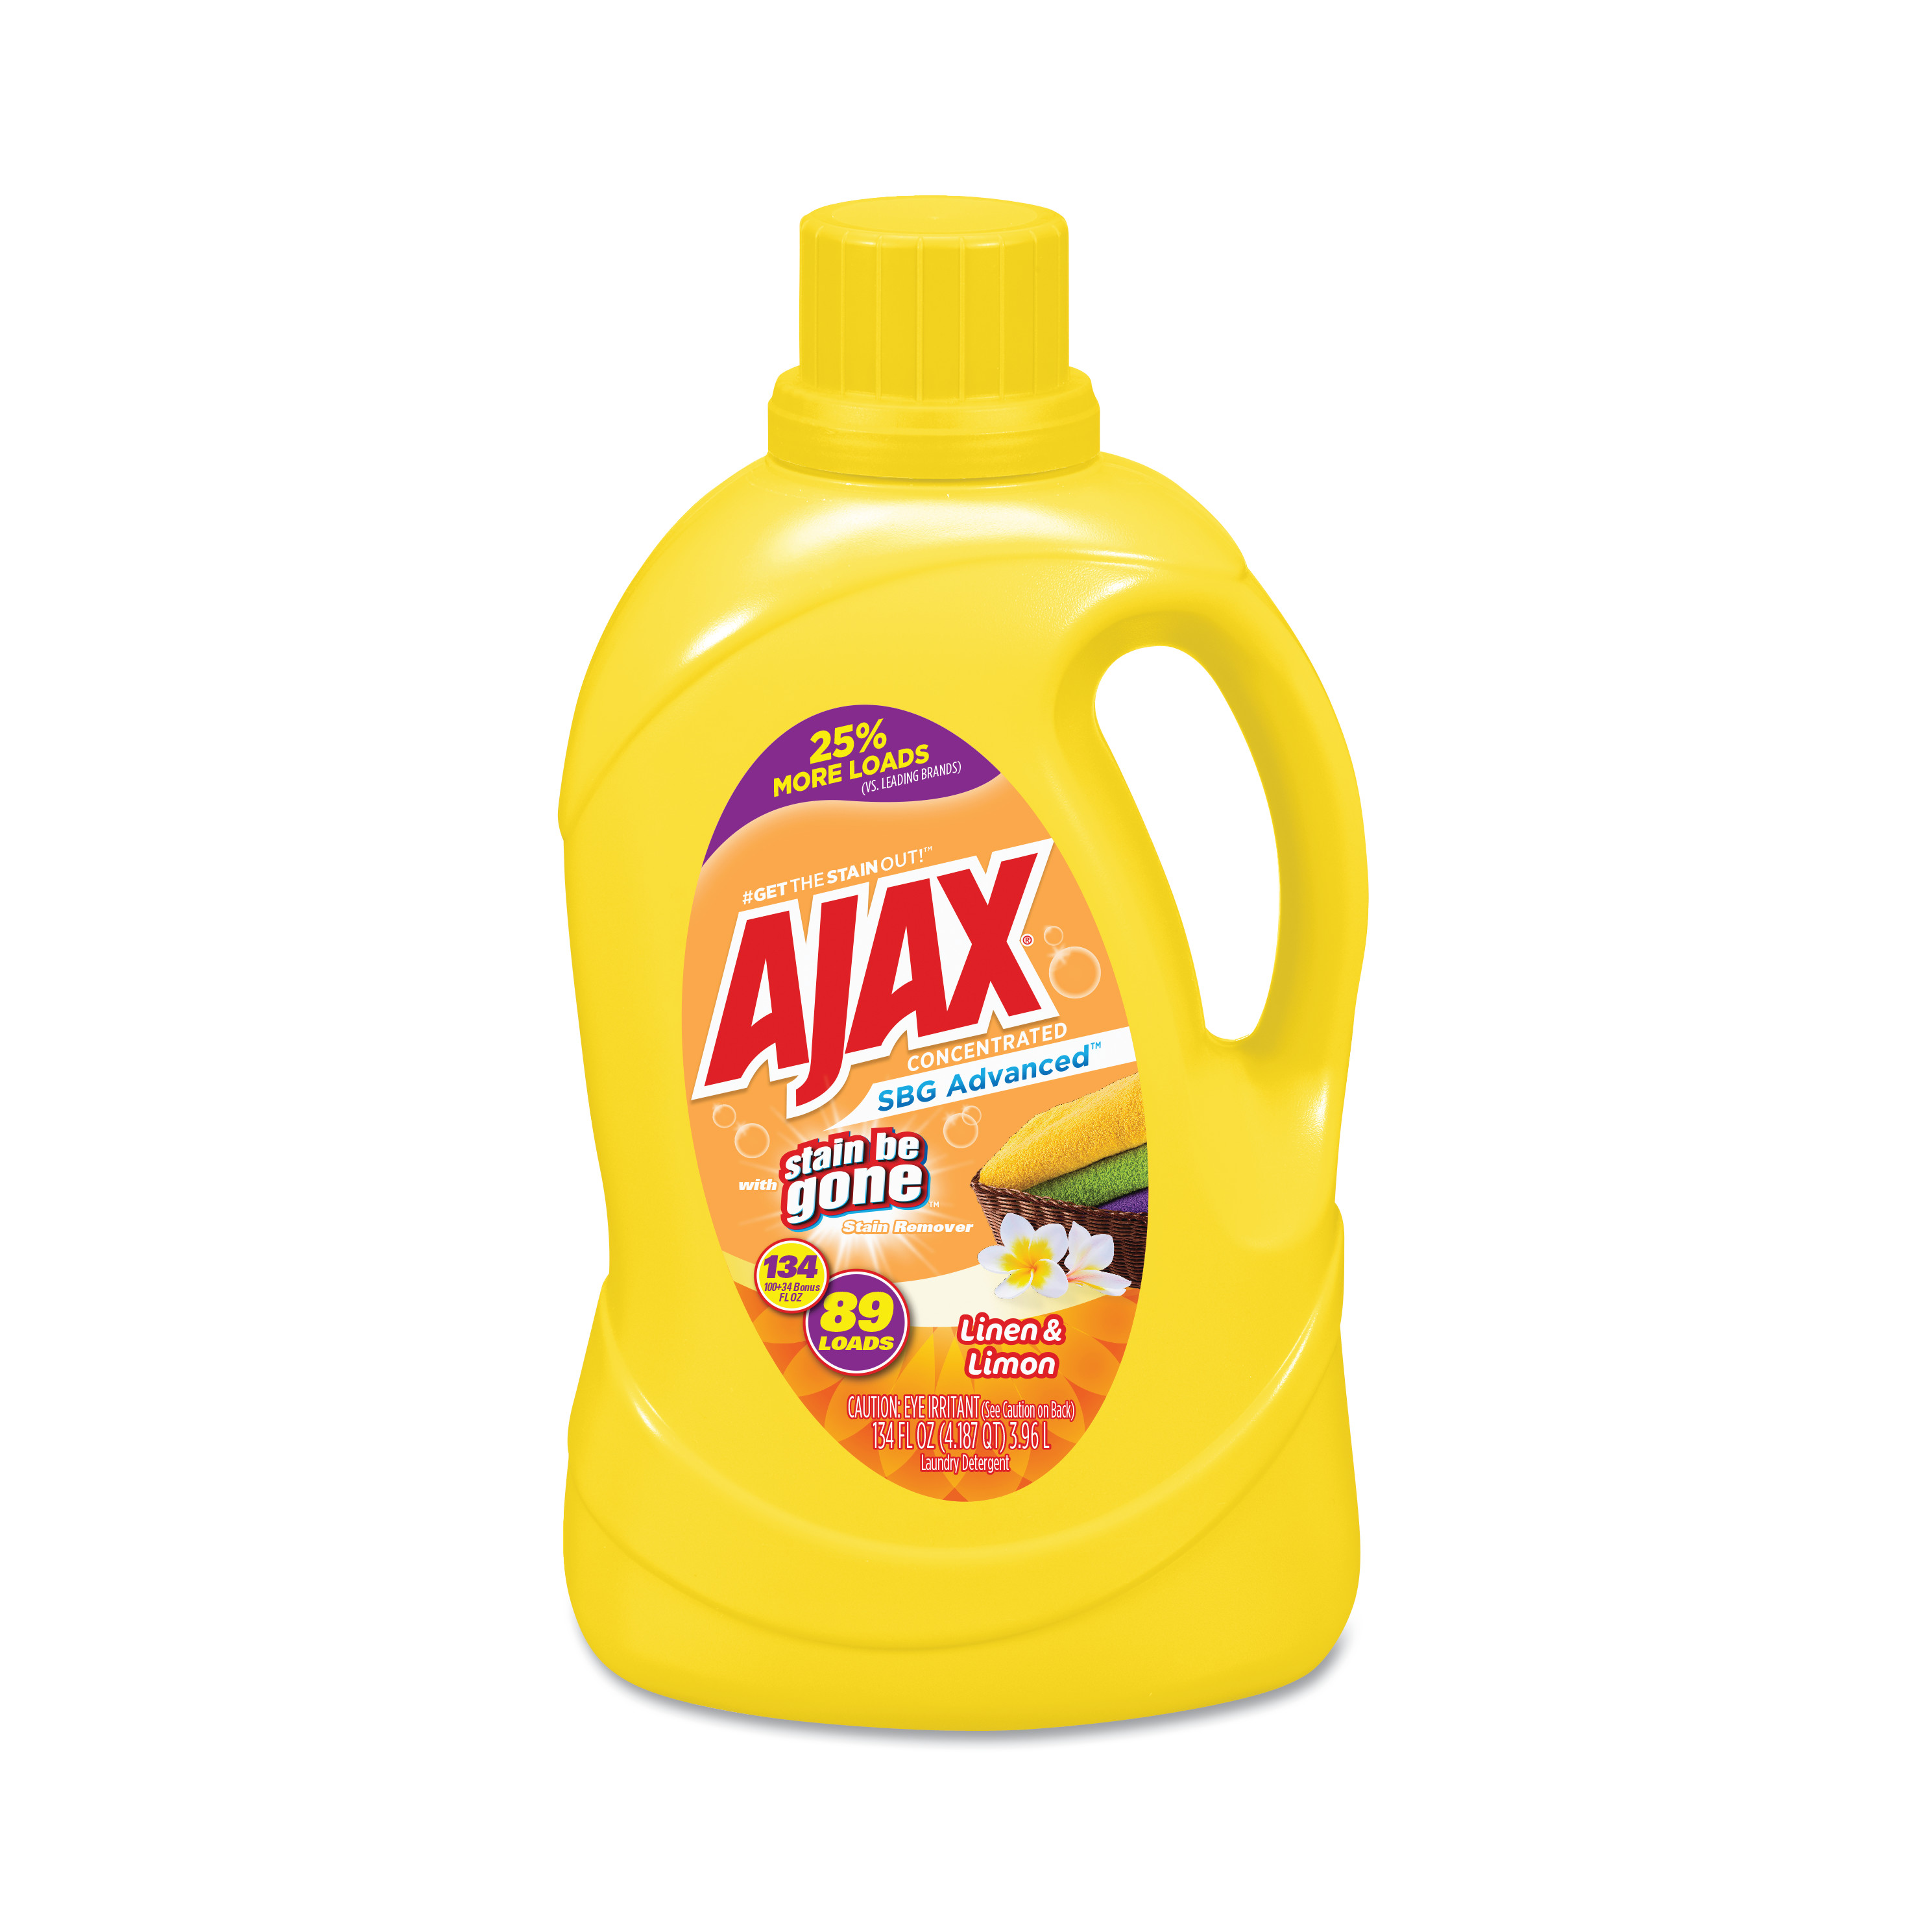  Ajax AJAXX43 Stain Be Gone Laundry Detergent, Lemon and Linen Scent, 134 oz Bottle, 4/Carton (PBCAJAXX43) 